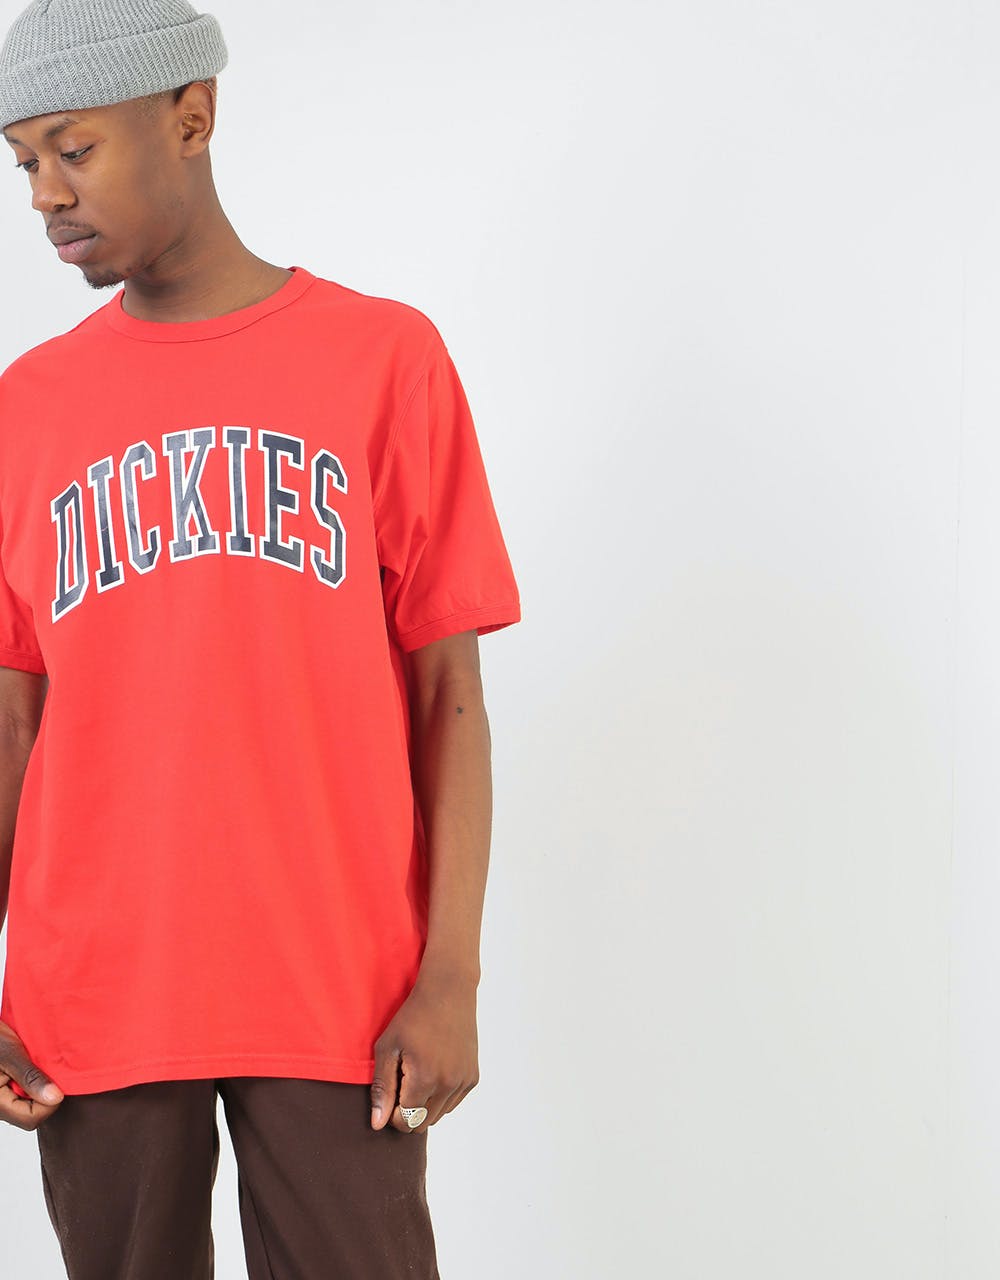 Dickies Stockdale T-Shirt - Fiery Red